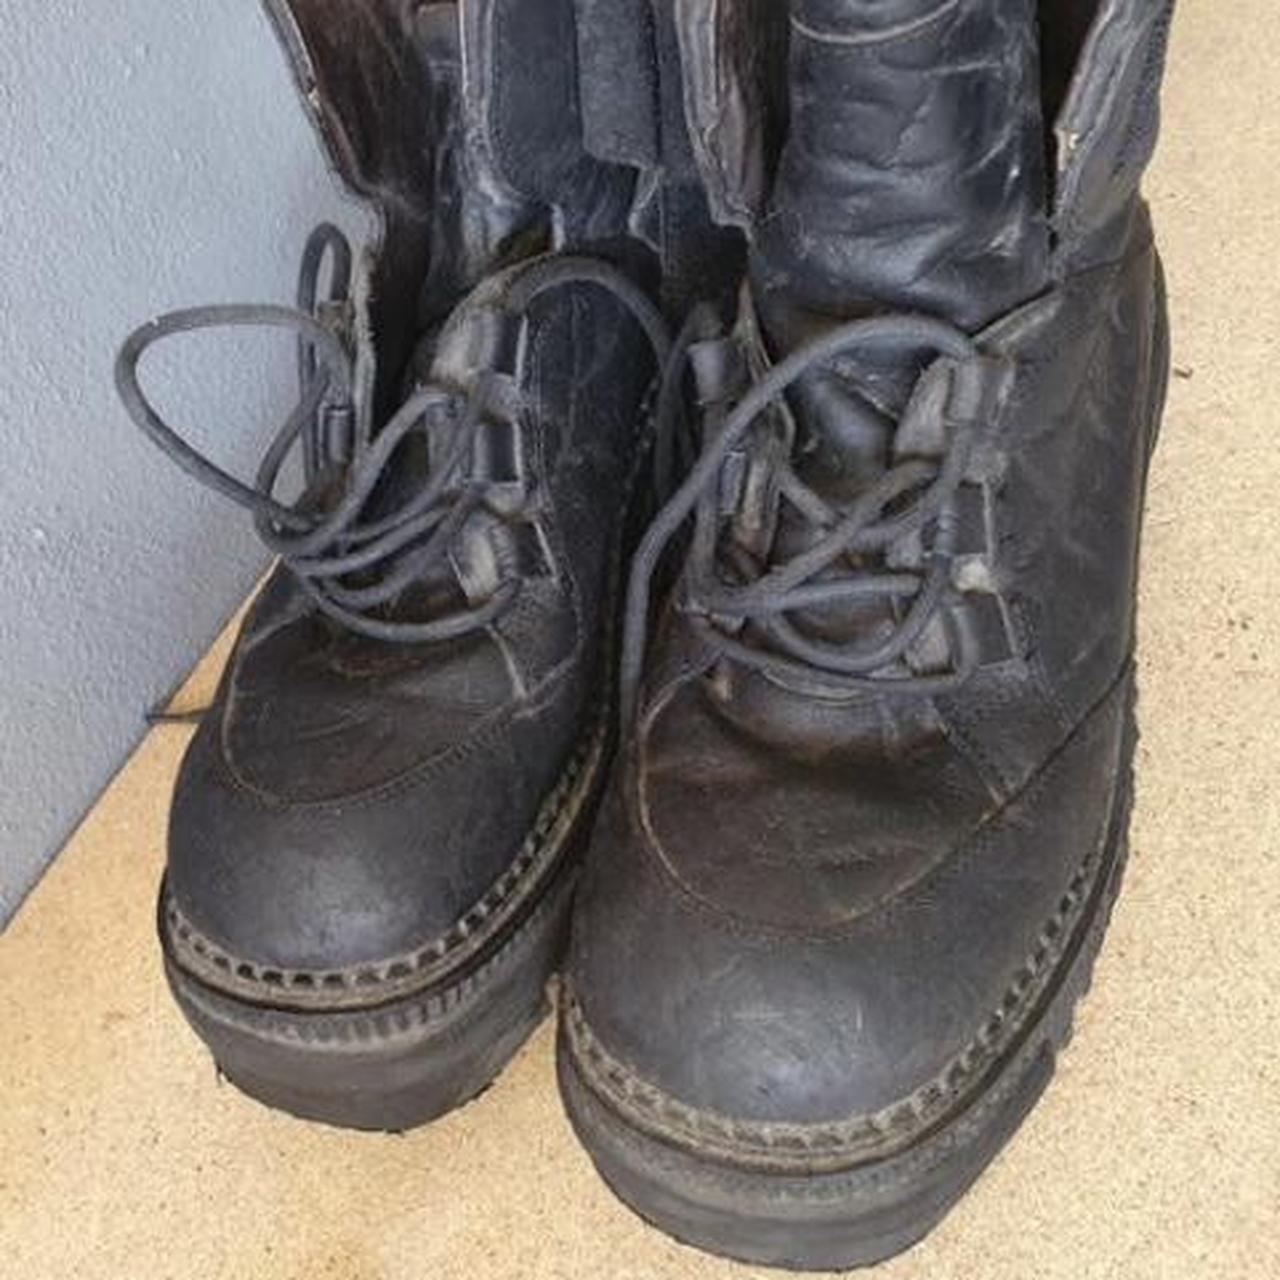 90s vintage destroy boots, platform, high quality,... - Depop